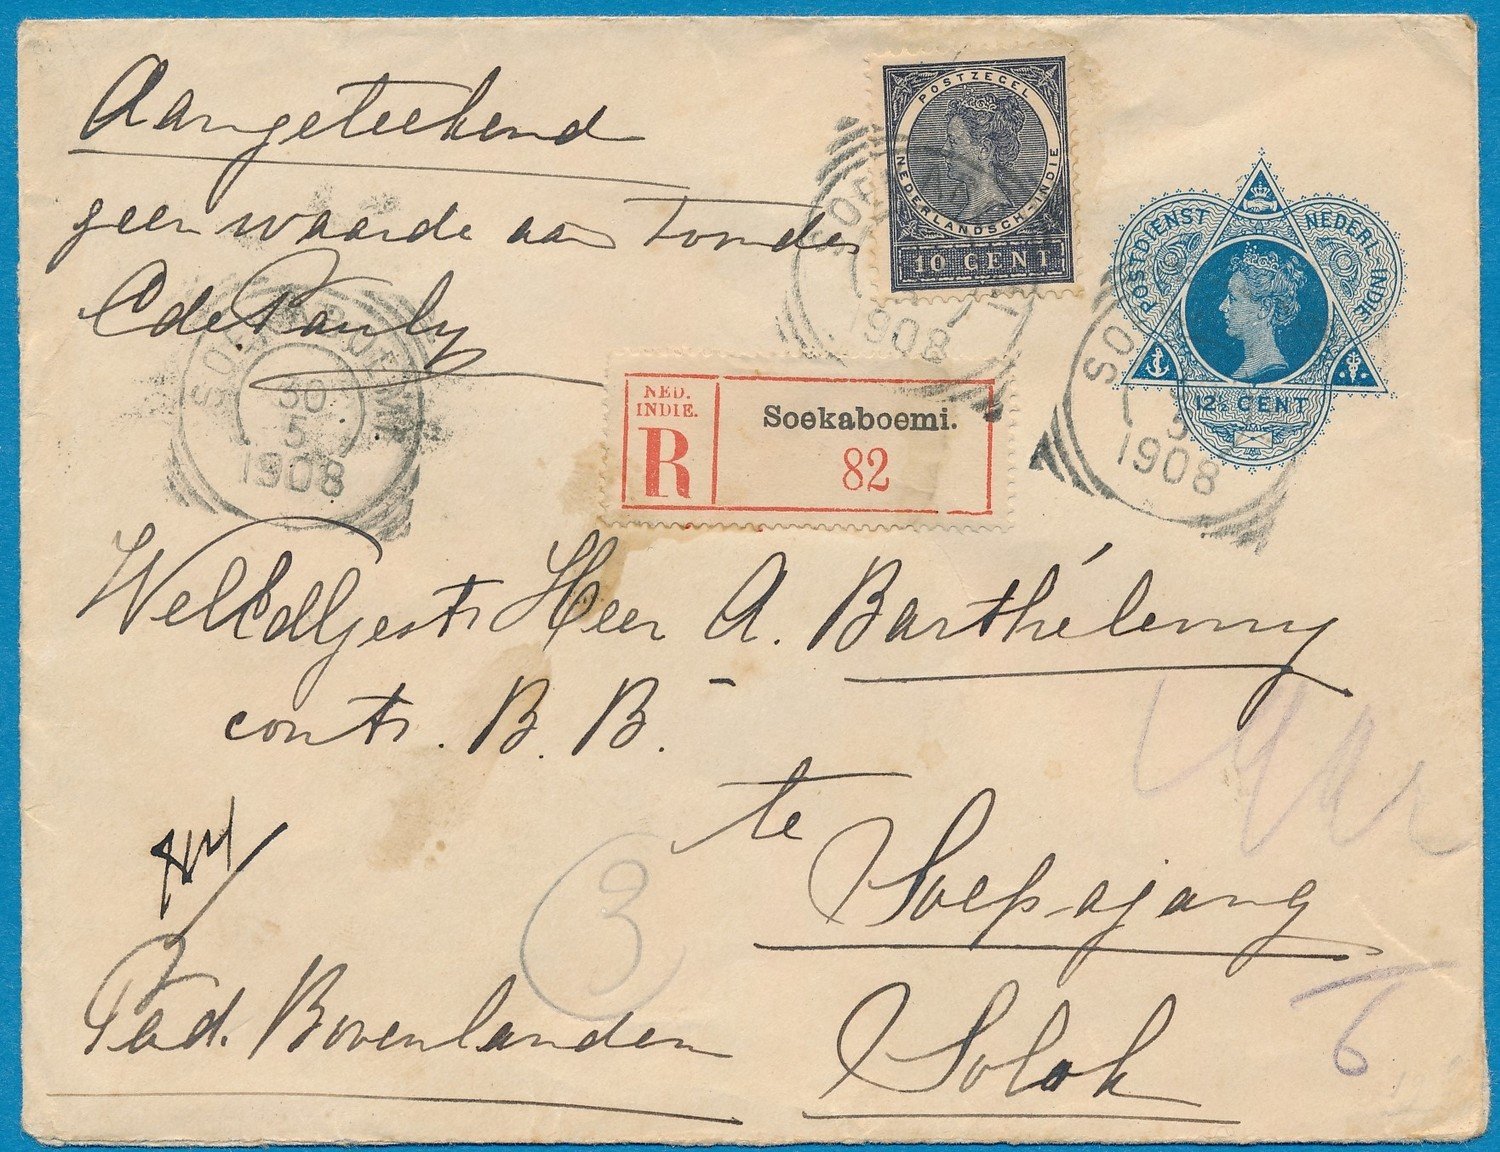 NETHERLANDS EAST INDIES R envelope 1908 Soekaboemi to Solok